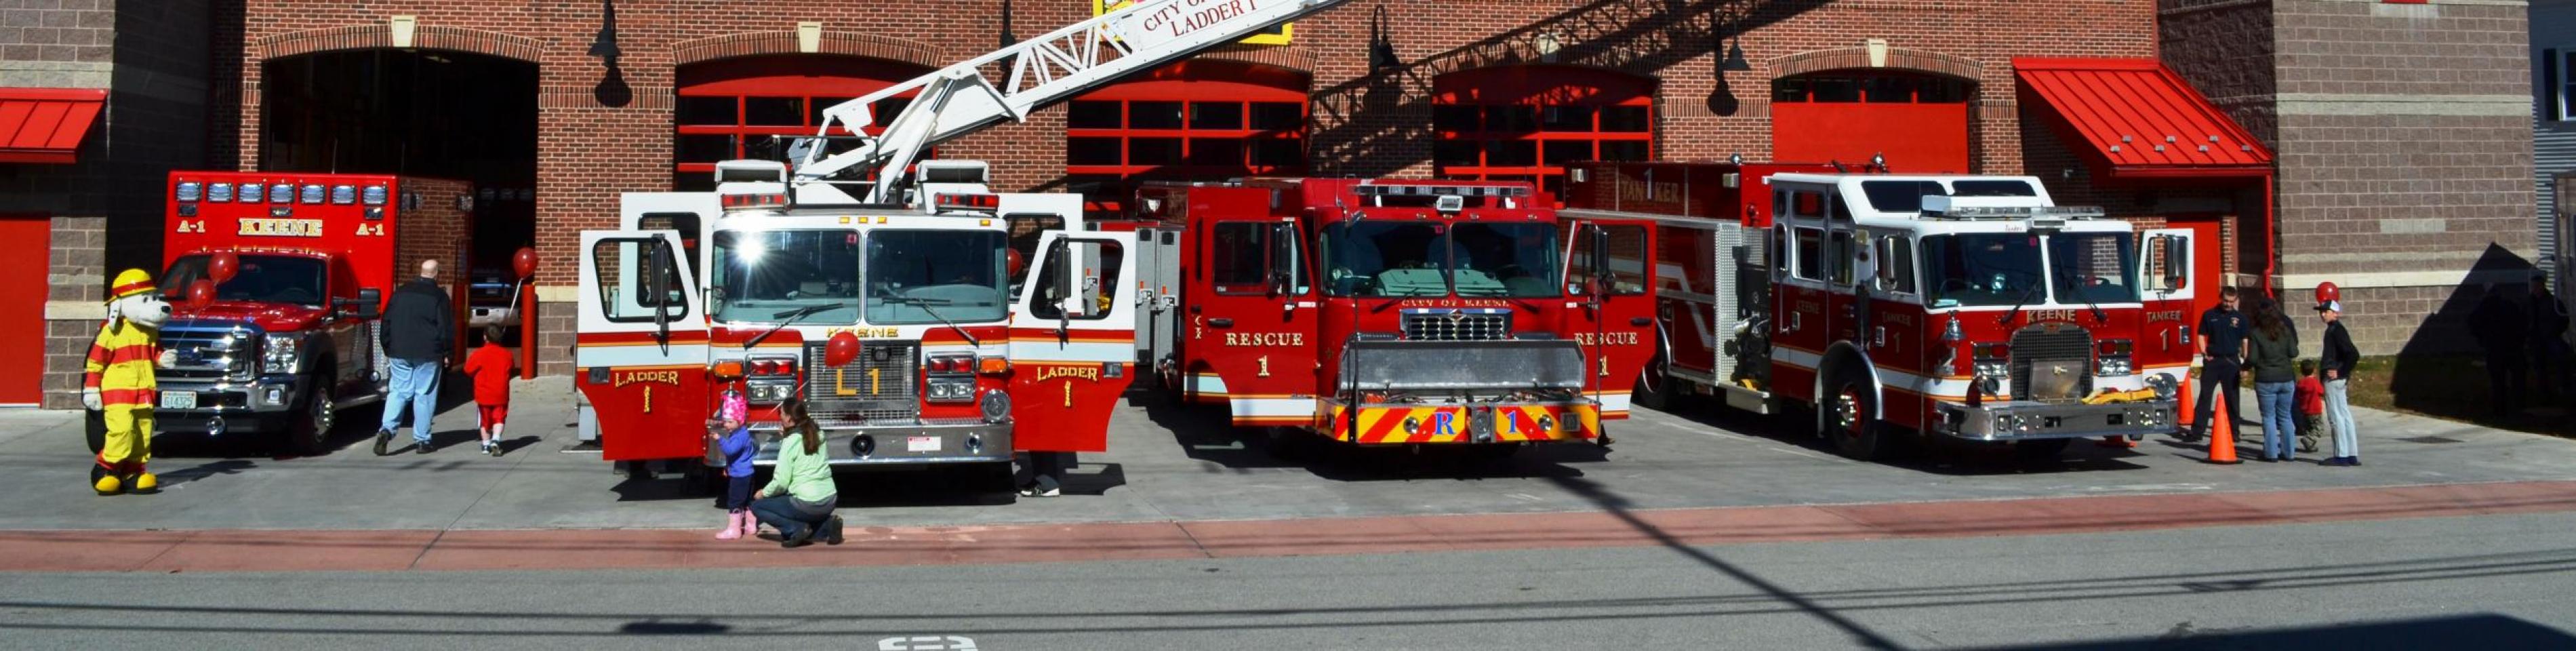 Fire Department | City of Keene